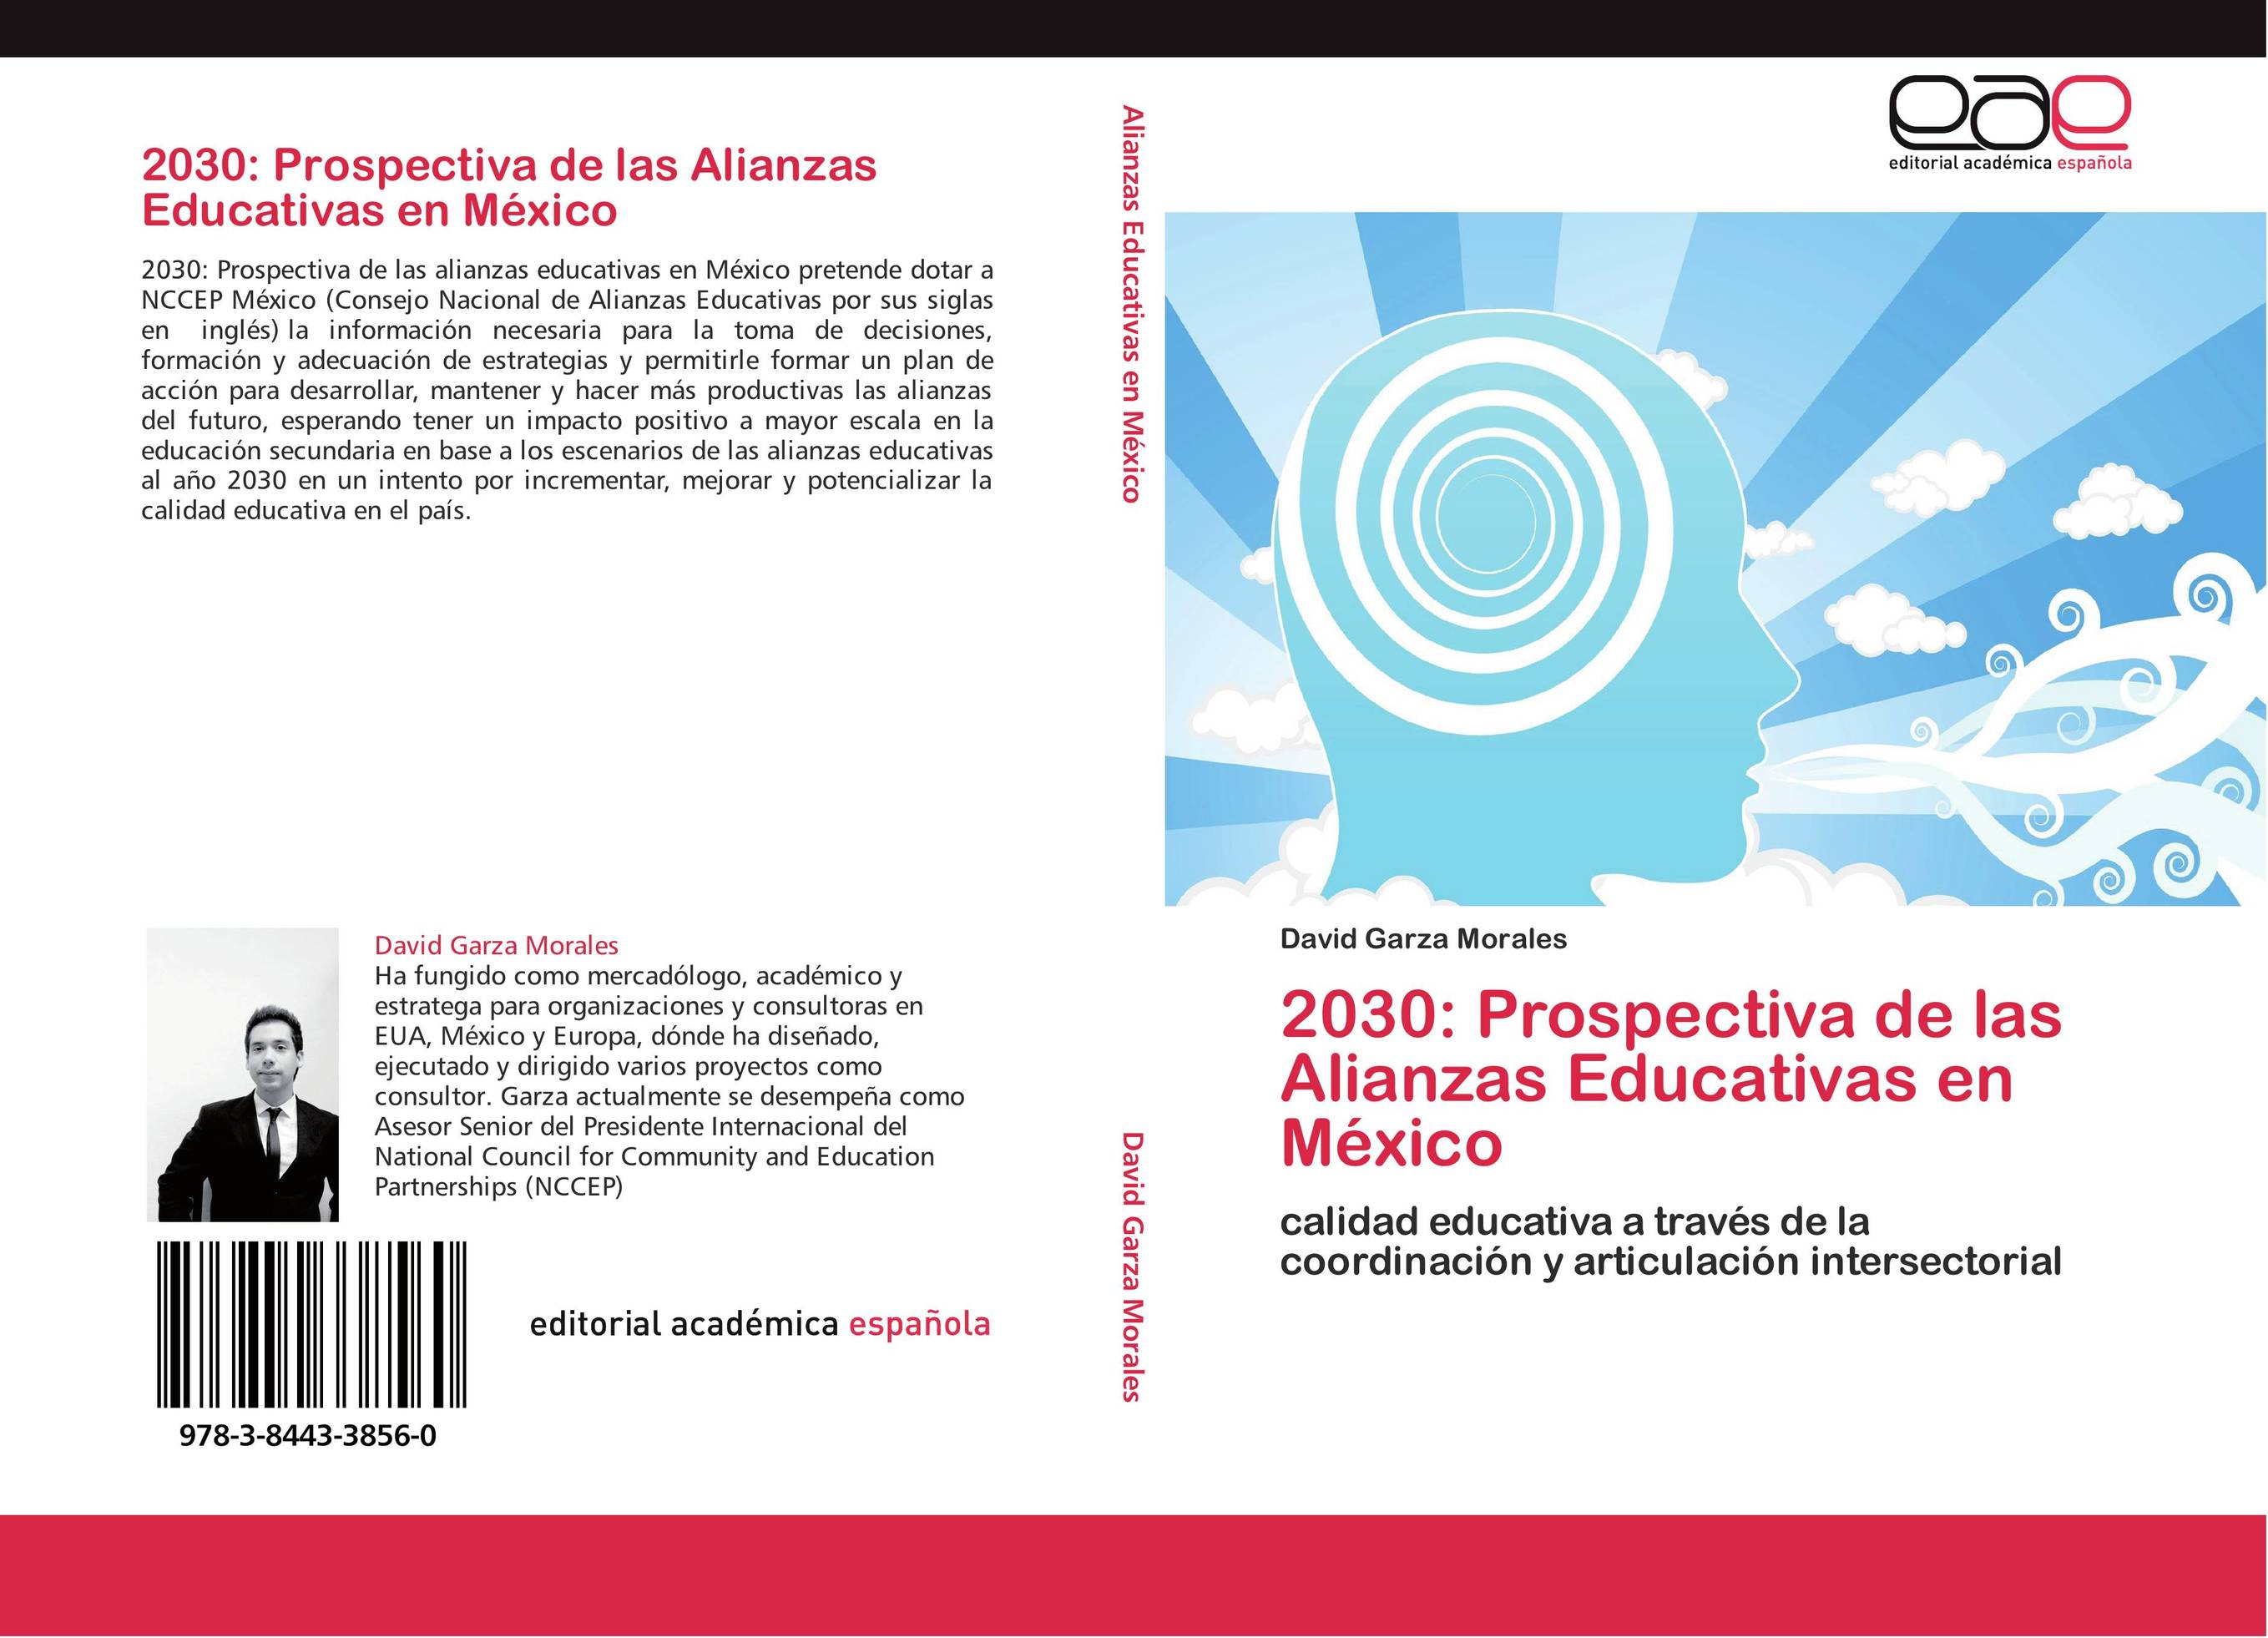 2030: Prospectiva de las Alianzas Educativas en México